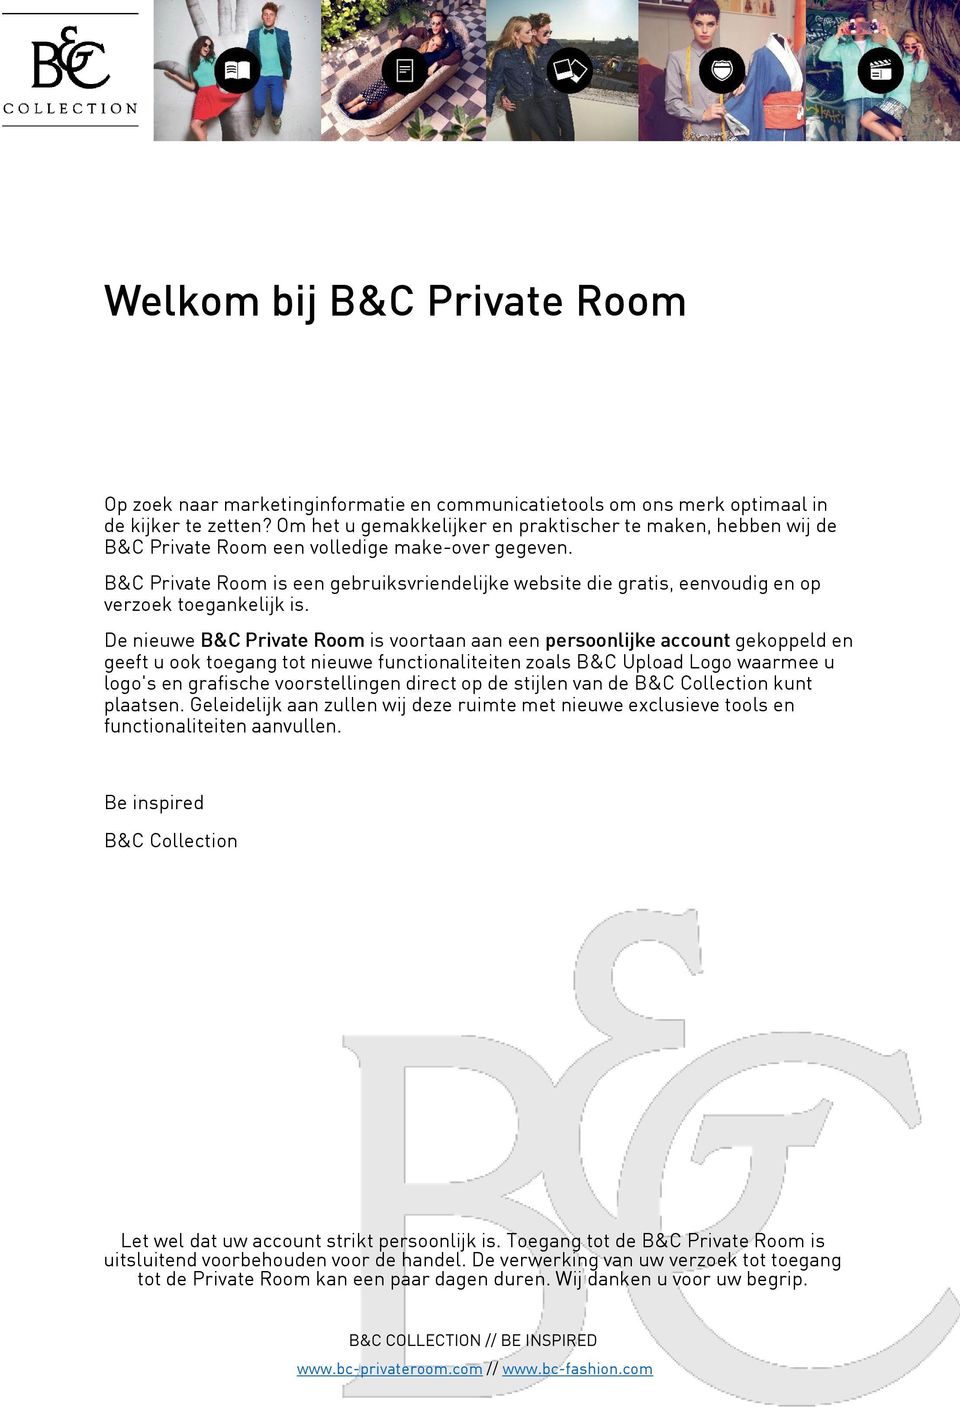 B&C Private Room is een gebruiksvriendelijke website die gratis, eenvoudig en op verzoek toegankelijk is.